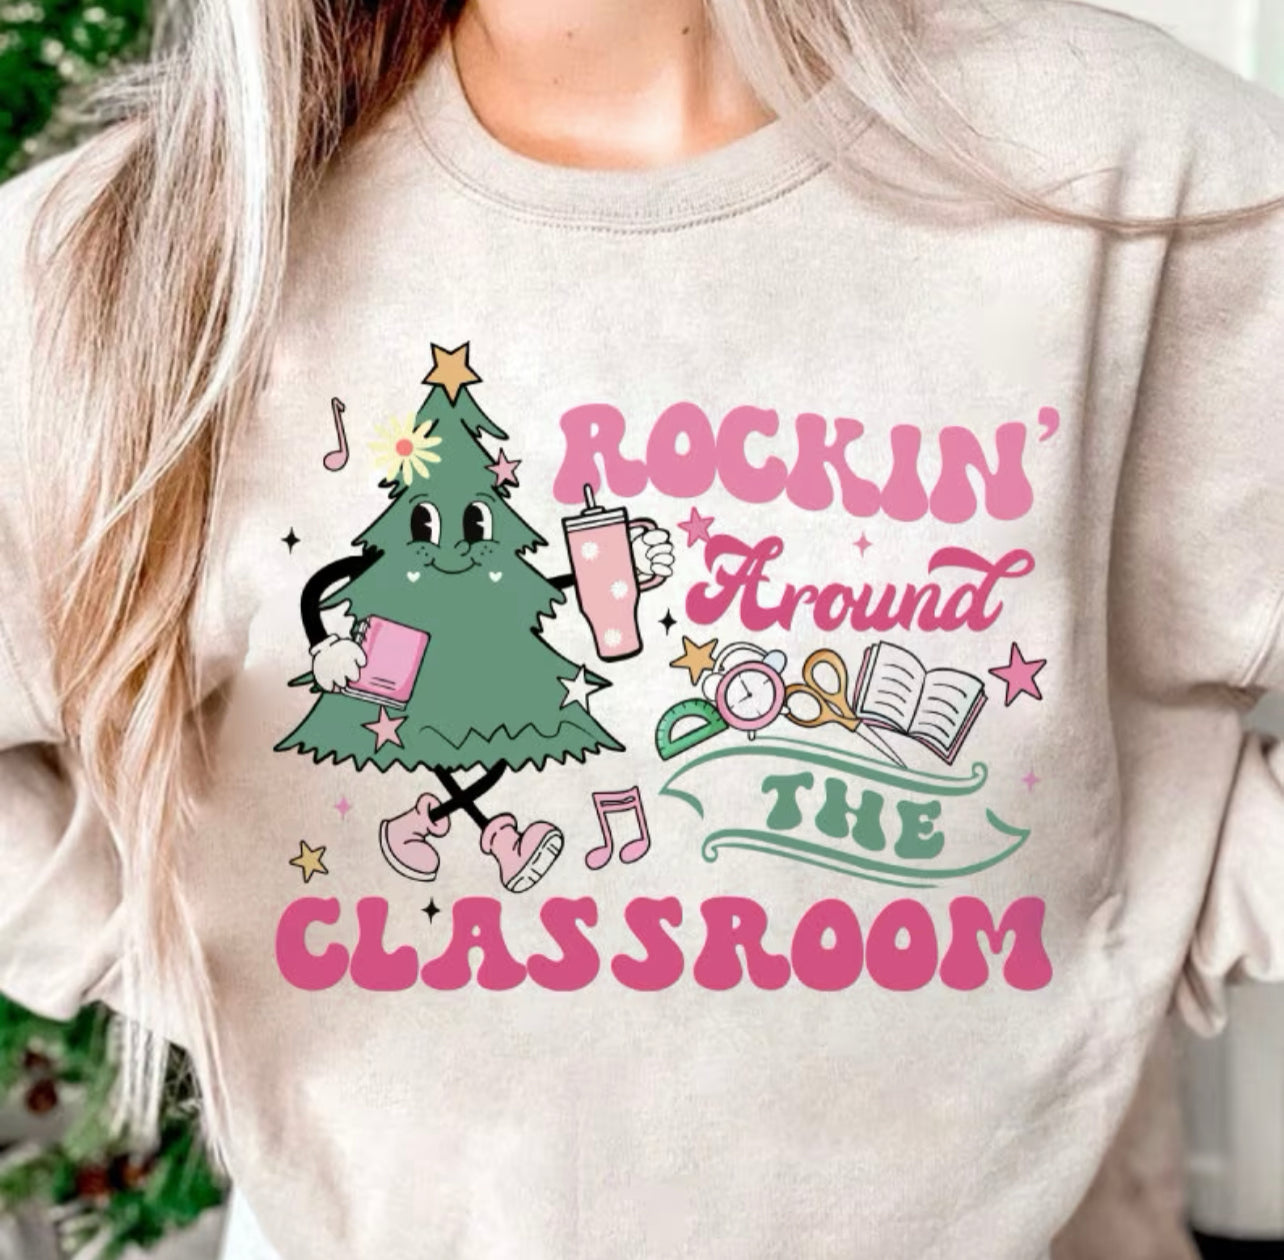 Rockin’ Around the Classroom-Tee or Crewneck Sweatshirt